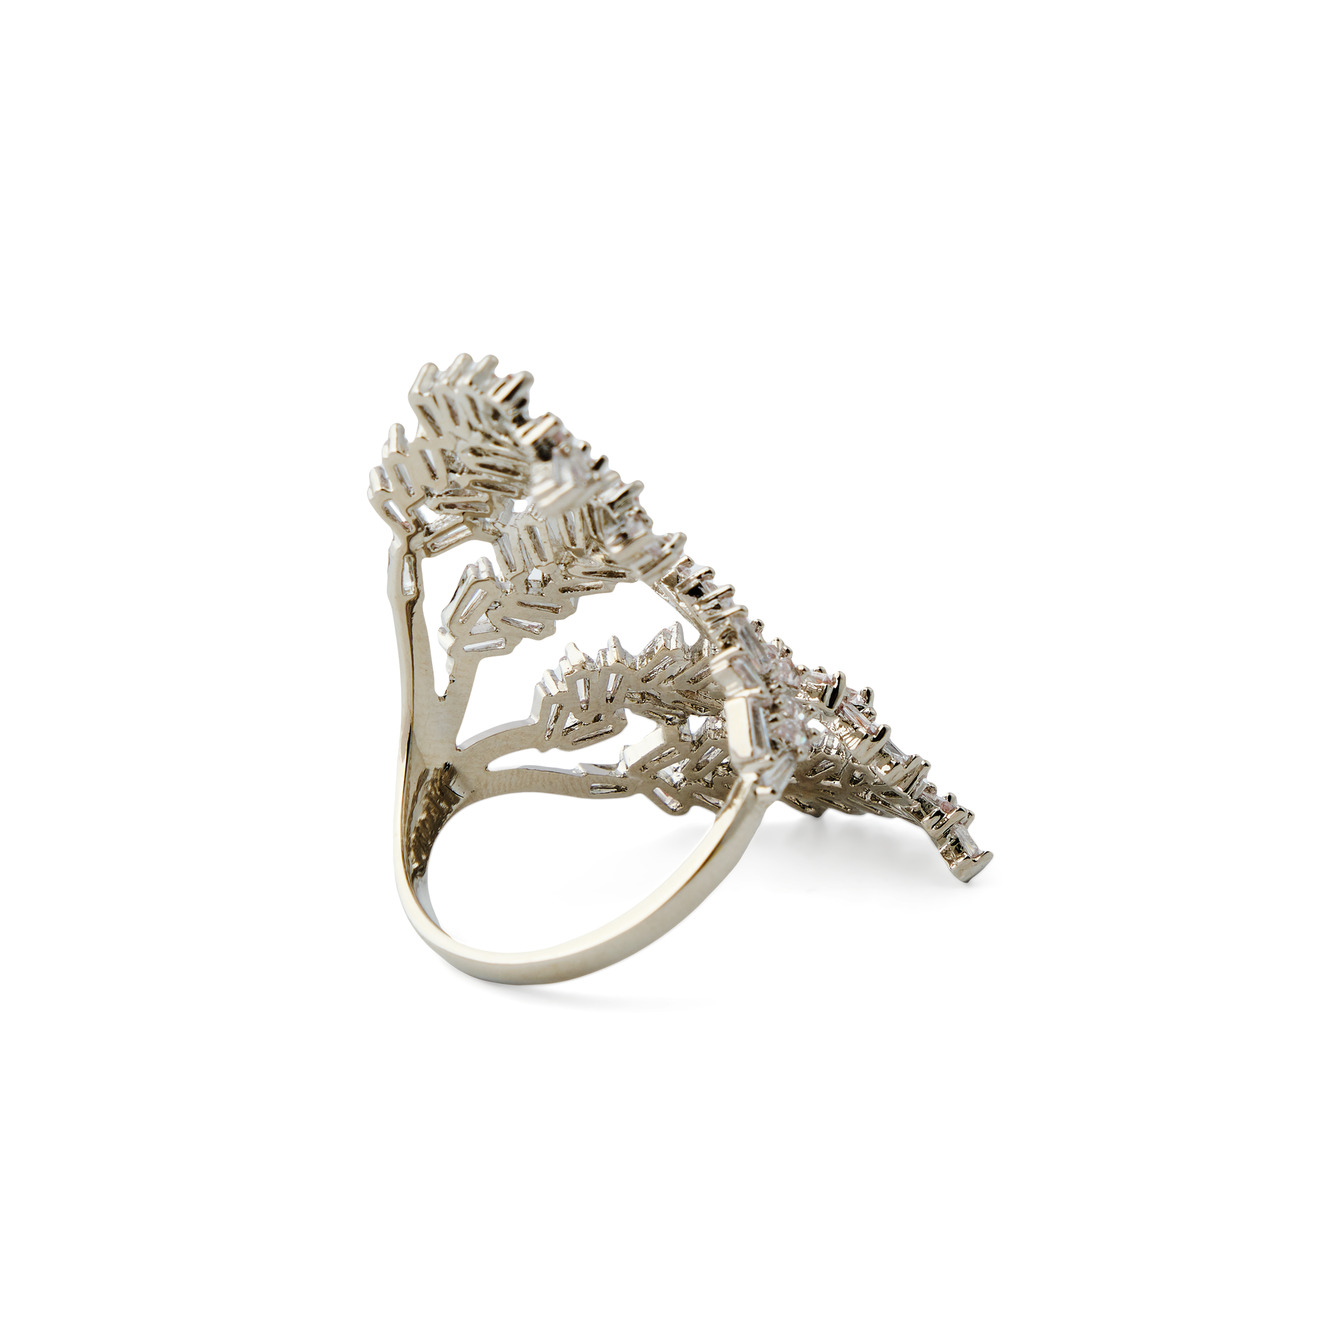 Herald Percy Серебристое кольцо-ветка с кристаллами herald percy серебристое кольцо с двумя разными кристаллами